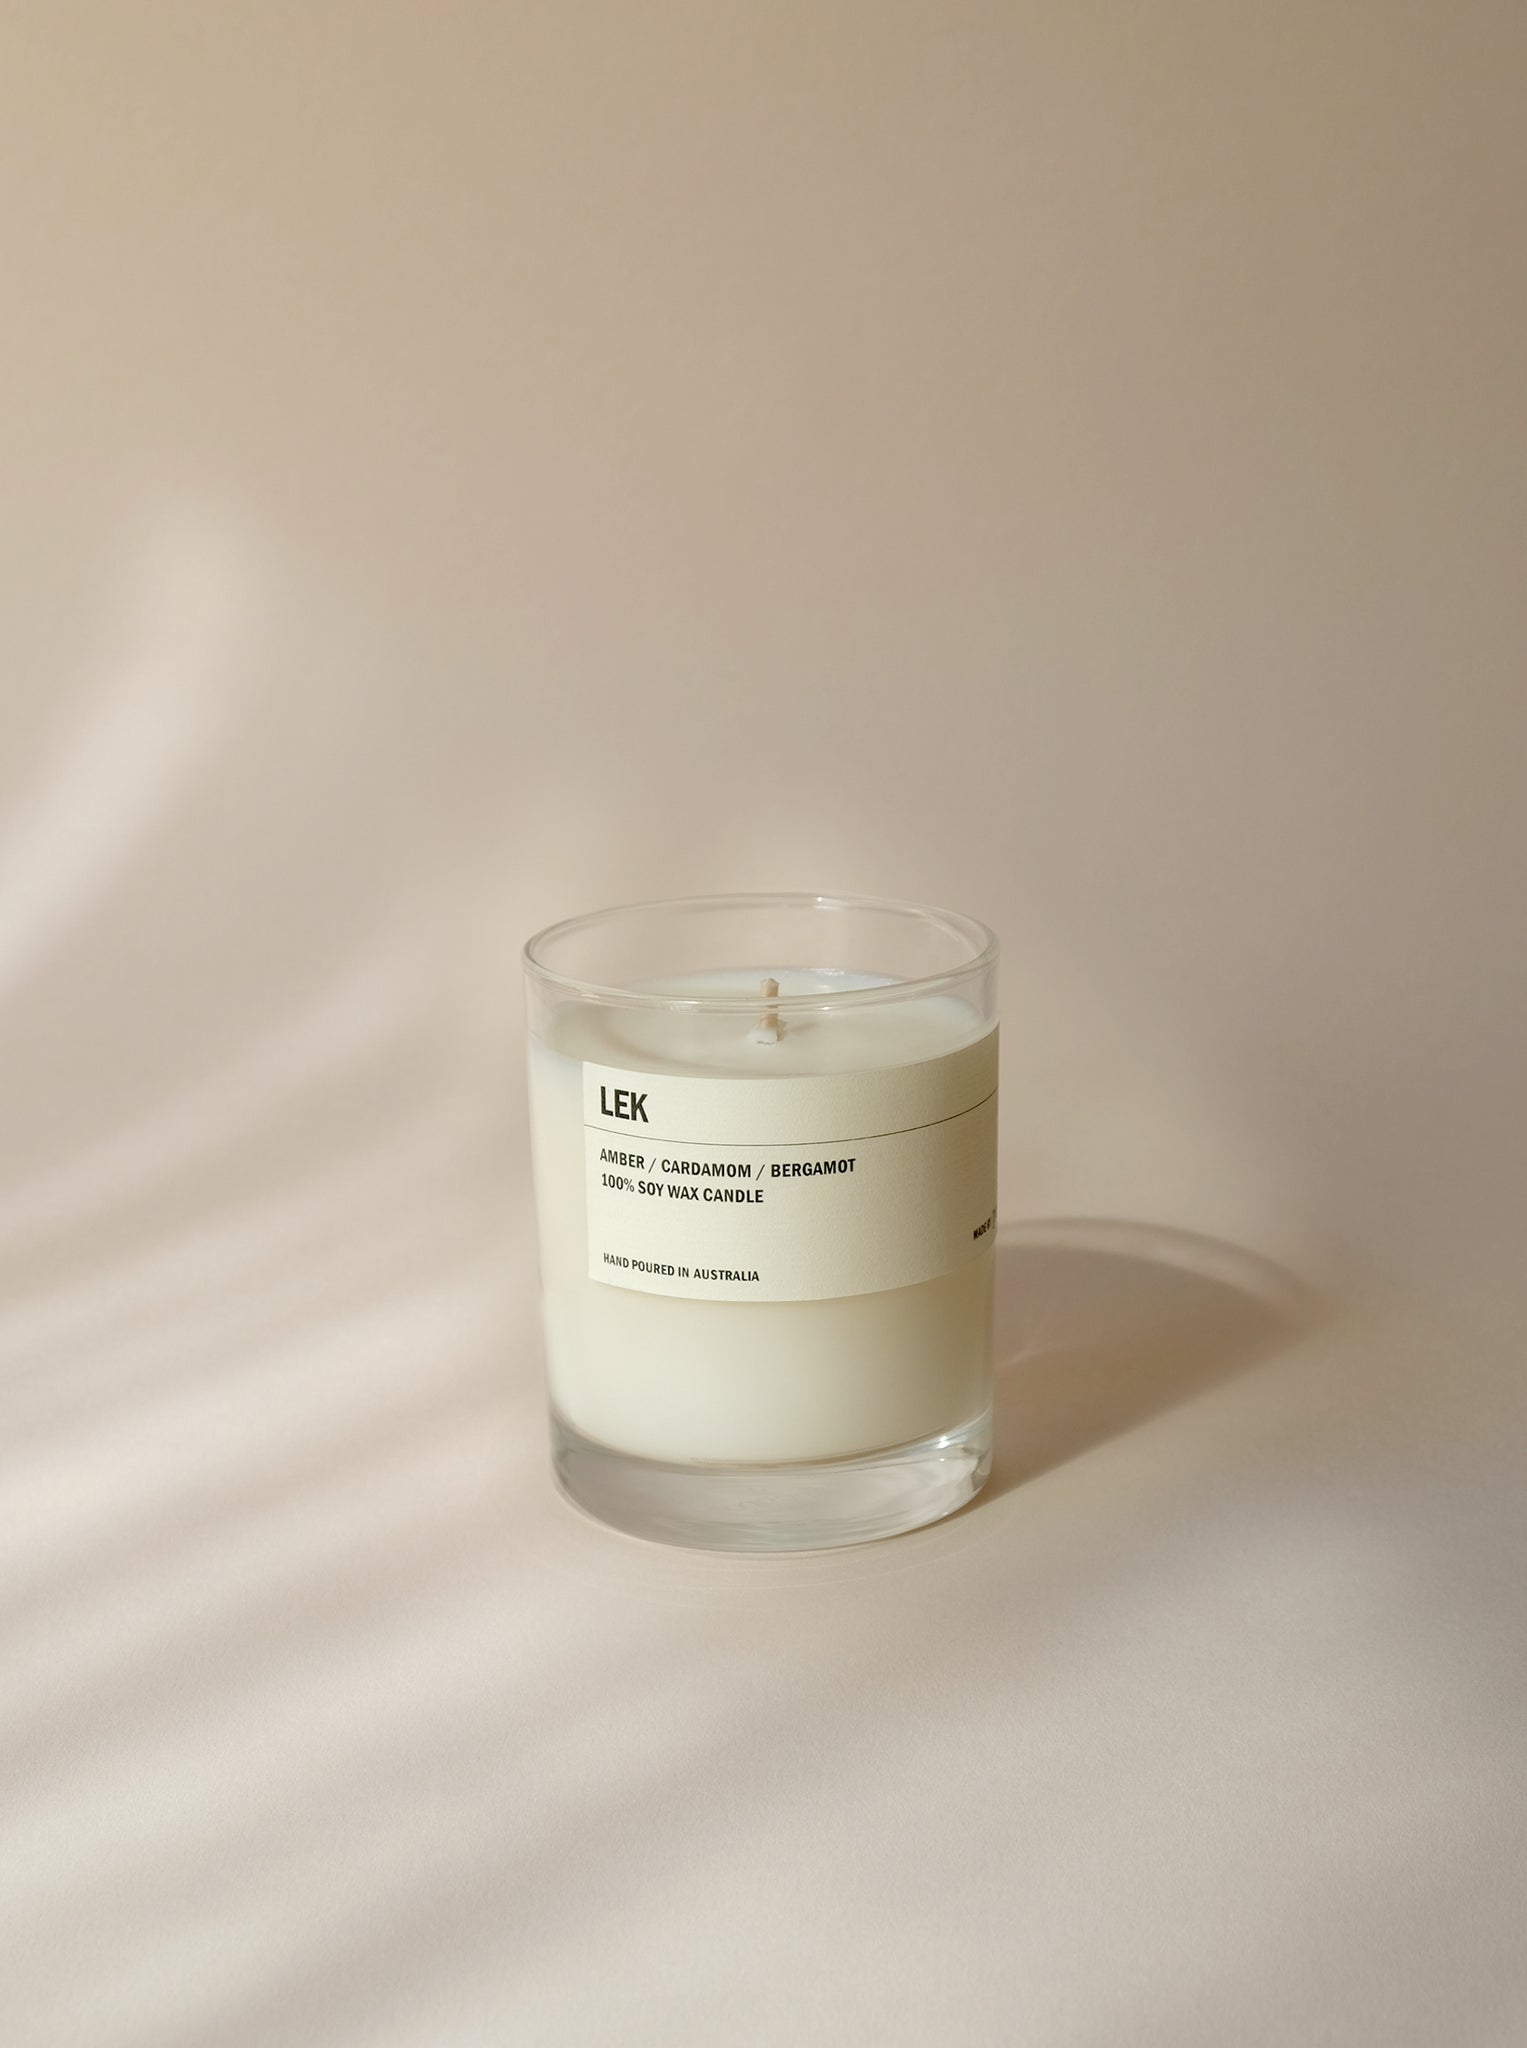 LEK: Amber / Cardamom / Bergamot Clear Candle 300g